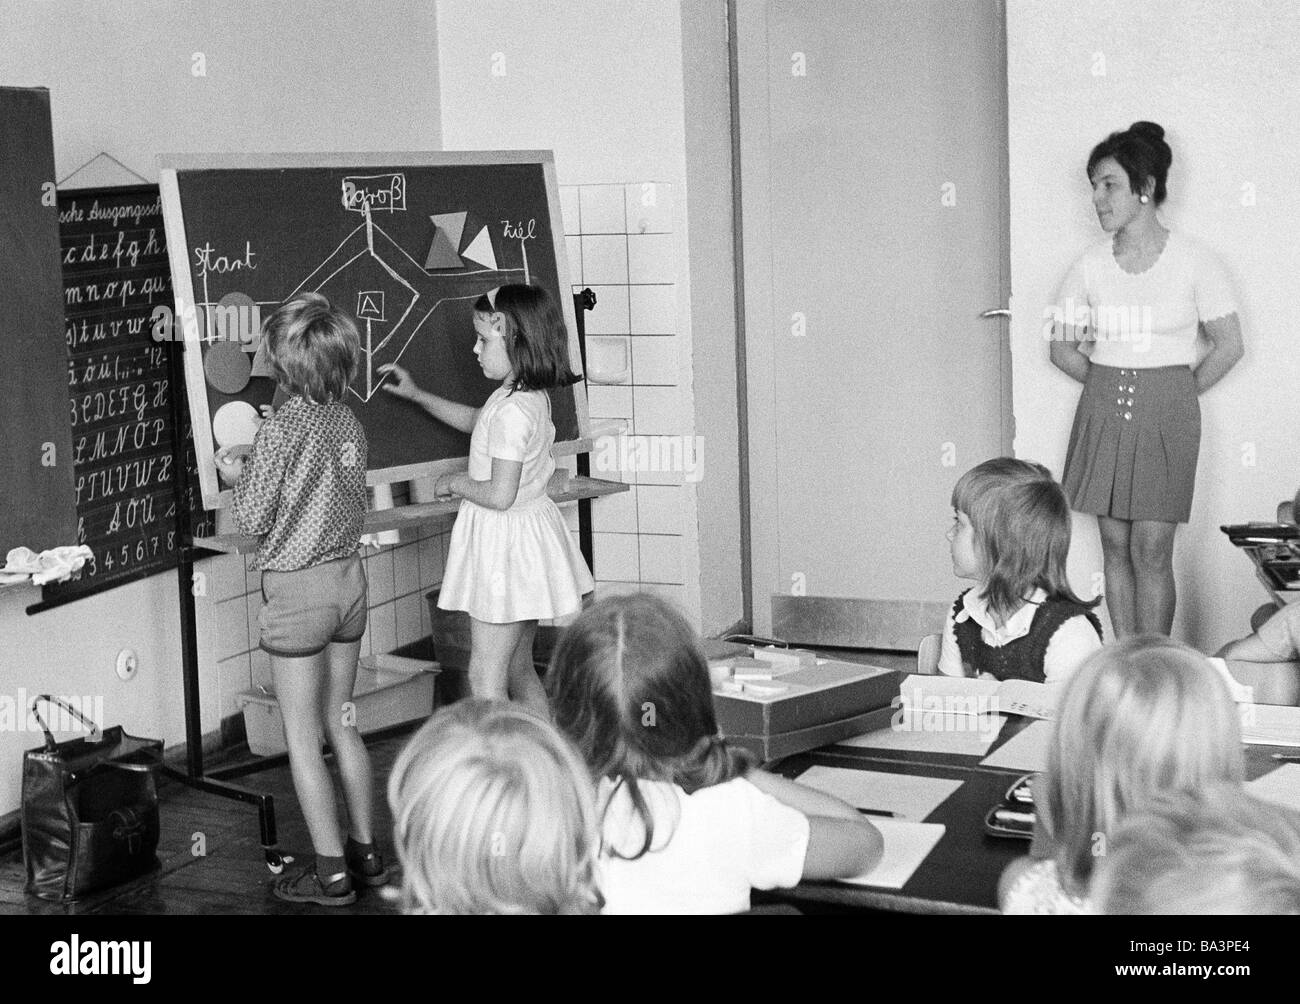 Negli anni settanta, foto in bianco e nero, di edificazione, scuola, scolari e studentesse in una scuola di classe durante le lezioni, insegnante di donna, i bambini di età compresa tra i 7 e i 10 anni, un ragazzo e una ragazza a una lavagna Foto Stock